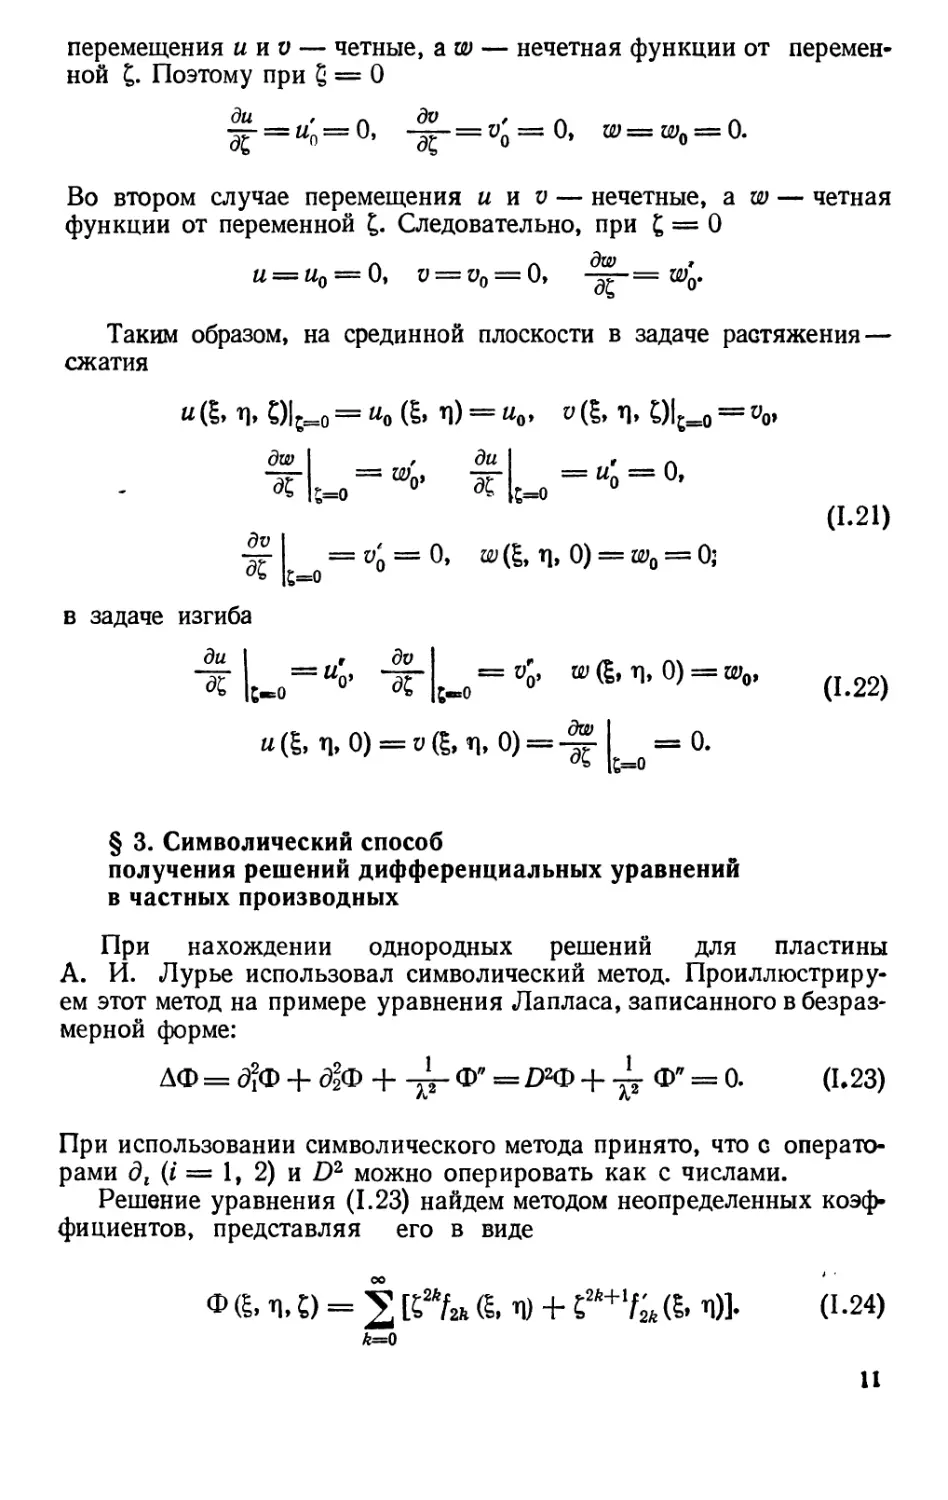 § 3. Символический способ получения решений дифференциальных уравнений в частных производных